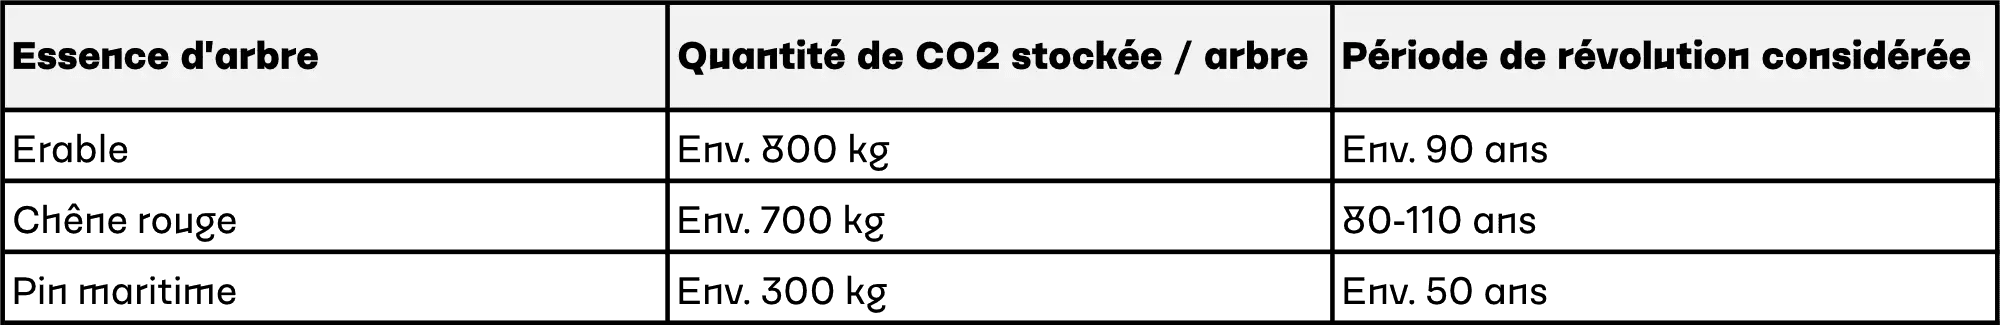 Tableau présentant la quantité de CO2 stockée par différentes essences de bois